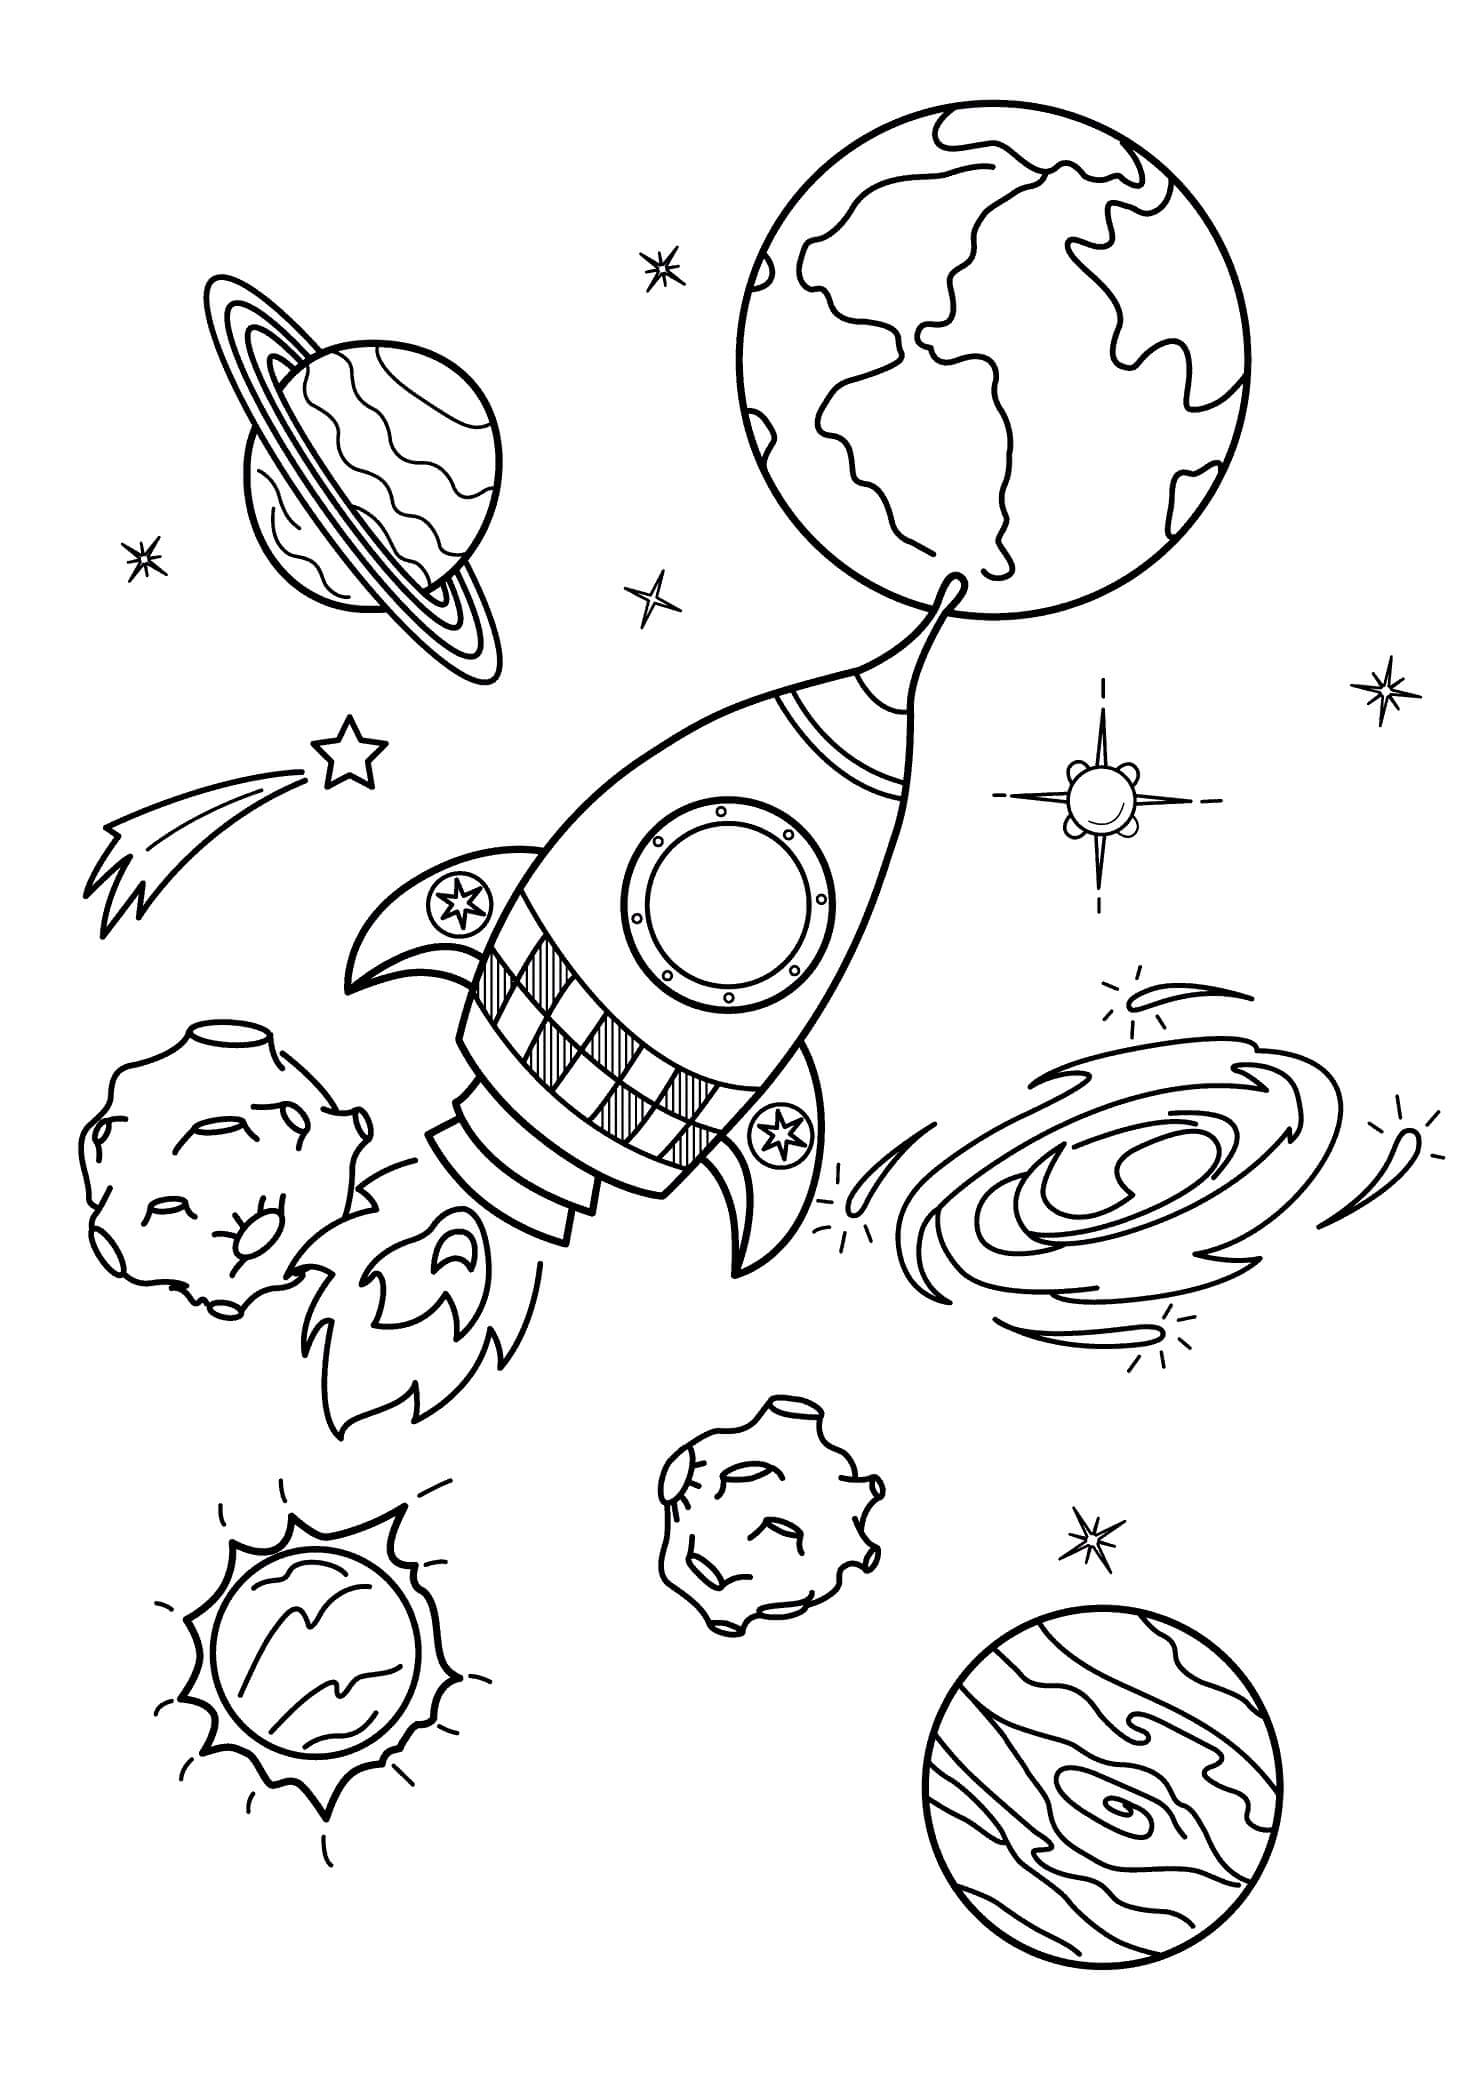 Nave espacial y Planetas